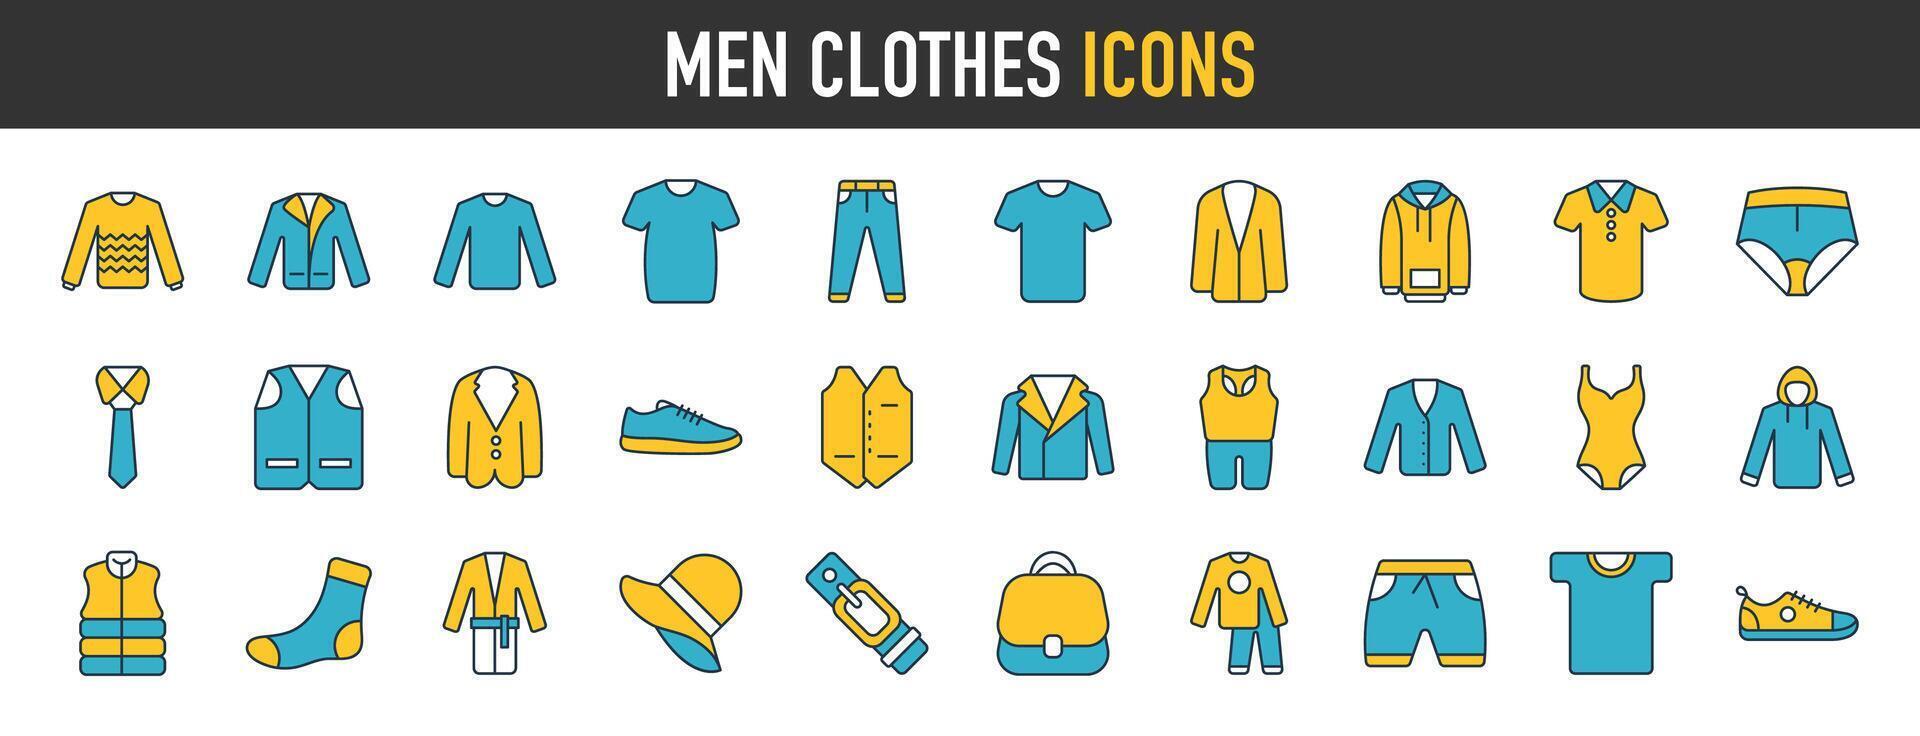 Männer Kleider Symbol Satz. Socken, BH, binden, Shirt, kurze Hose minimal Vektor Illustrationen. einfach Zeichen zum Mode Anwendung.